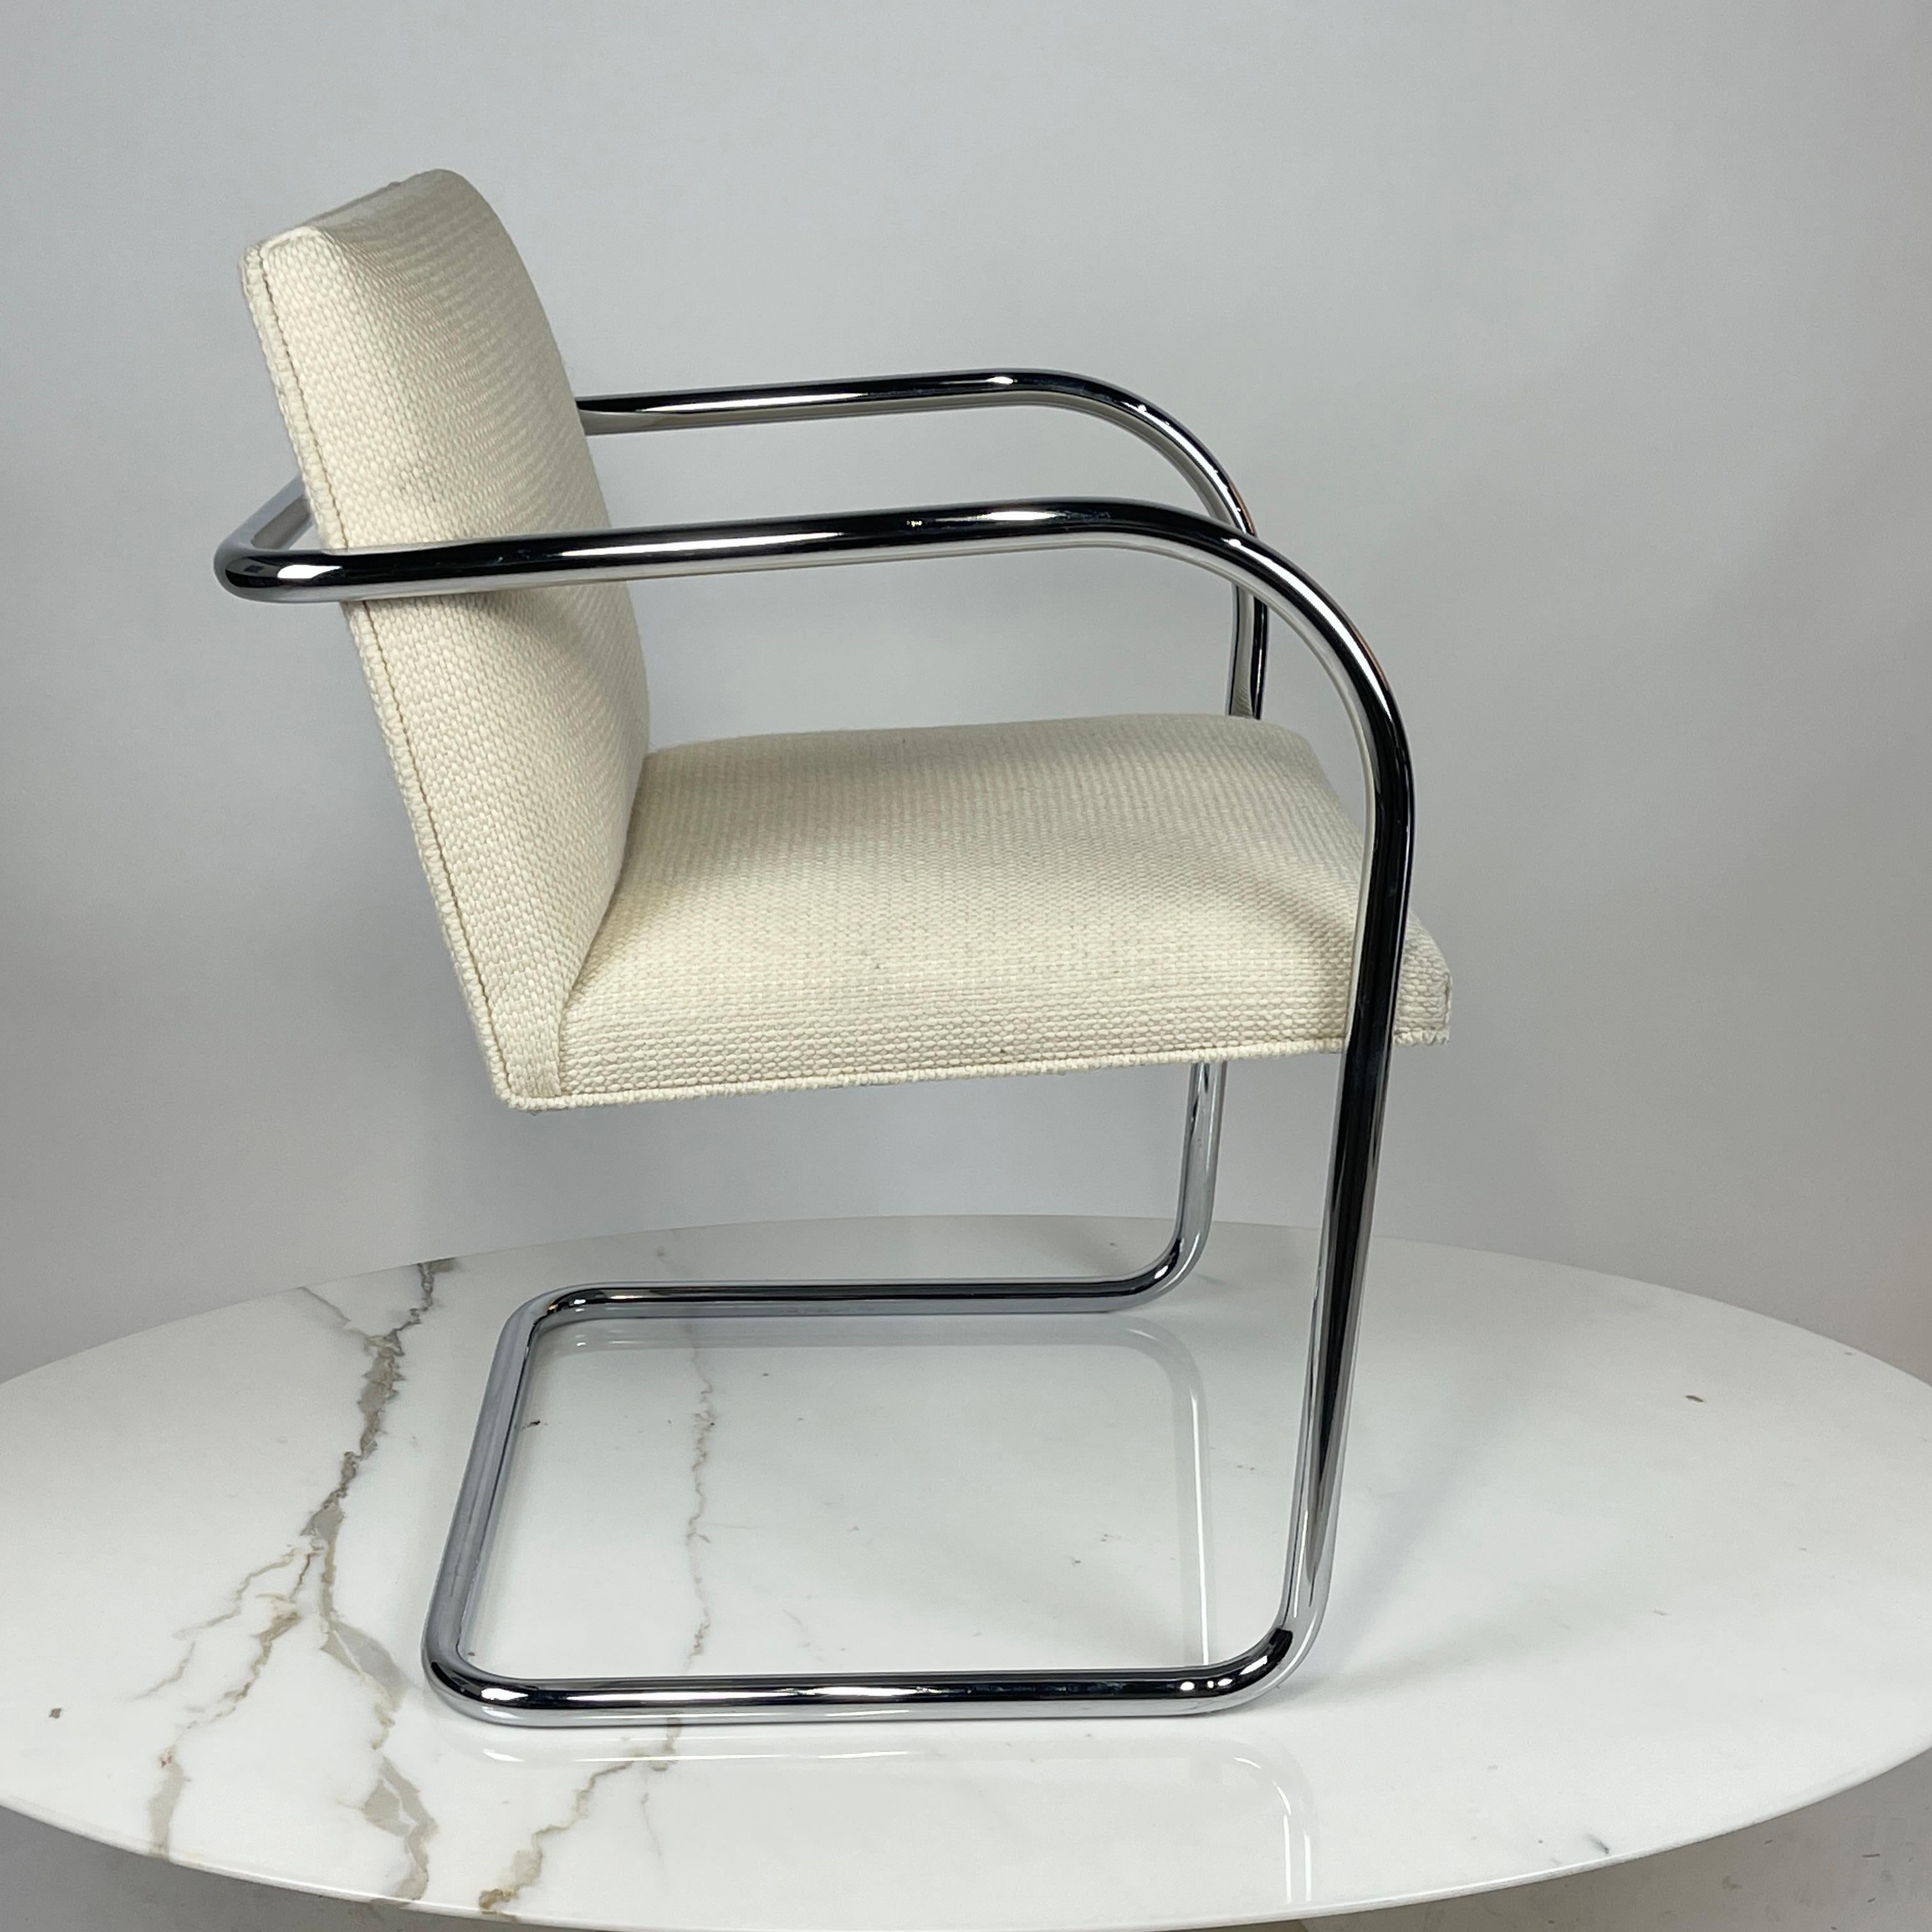 CETTE LISTE EST POUR UN ENSEMBLE DE 4

Chaise Knoll Brno conçue par Mies Van der Rohe. Ces chaises sont revêtues de la sellerie Cato de Knoll. La couleur est 